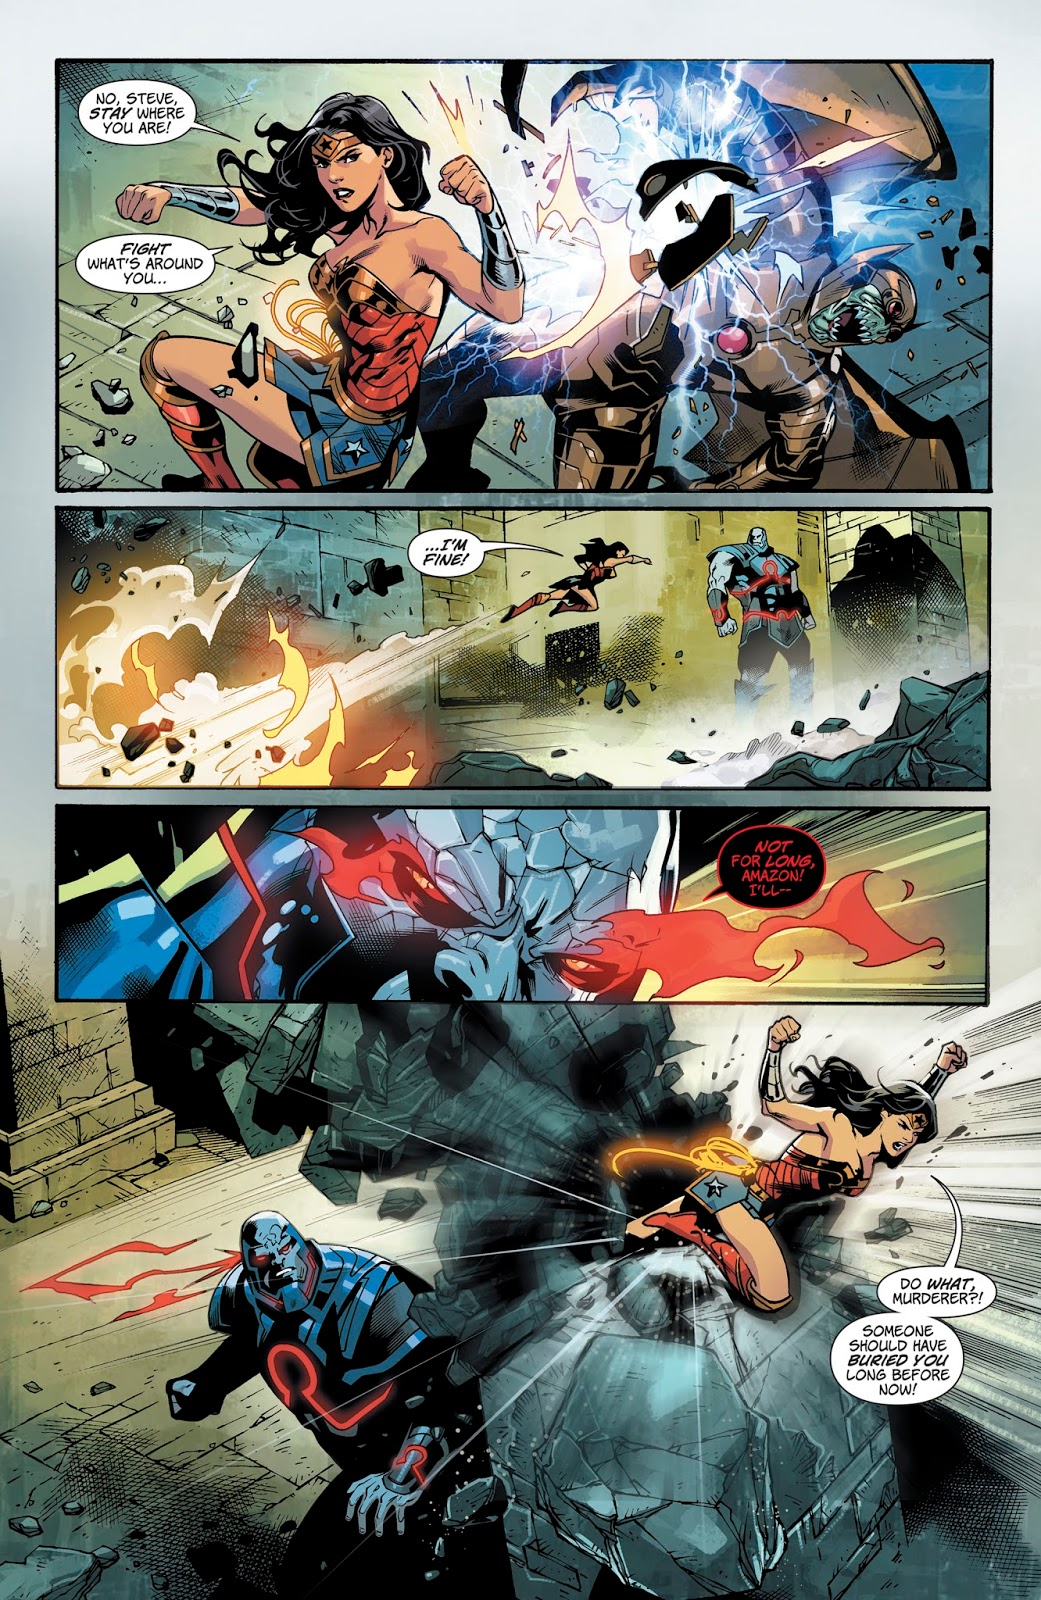 Wonder Woman VS Darkseid (Wonder Woman Vol. 5 #44) 